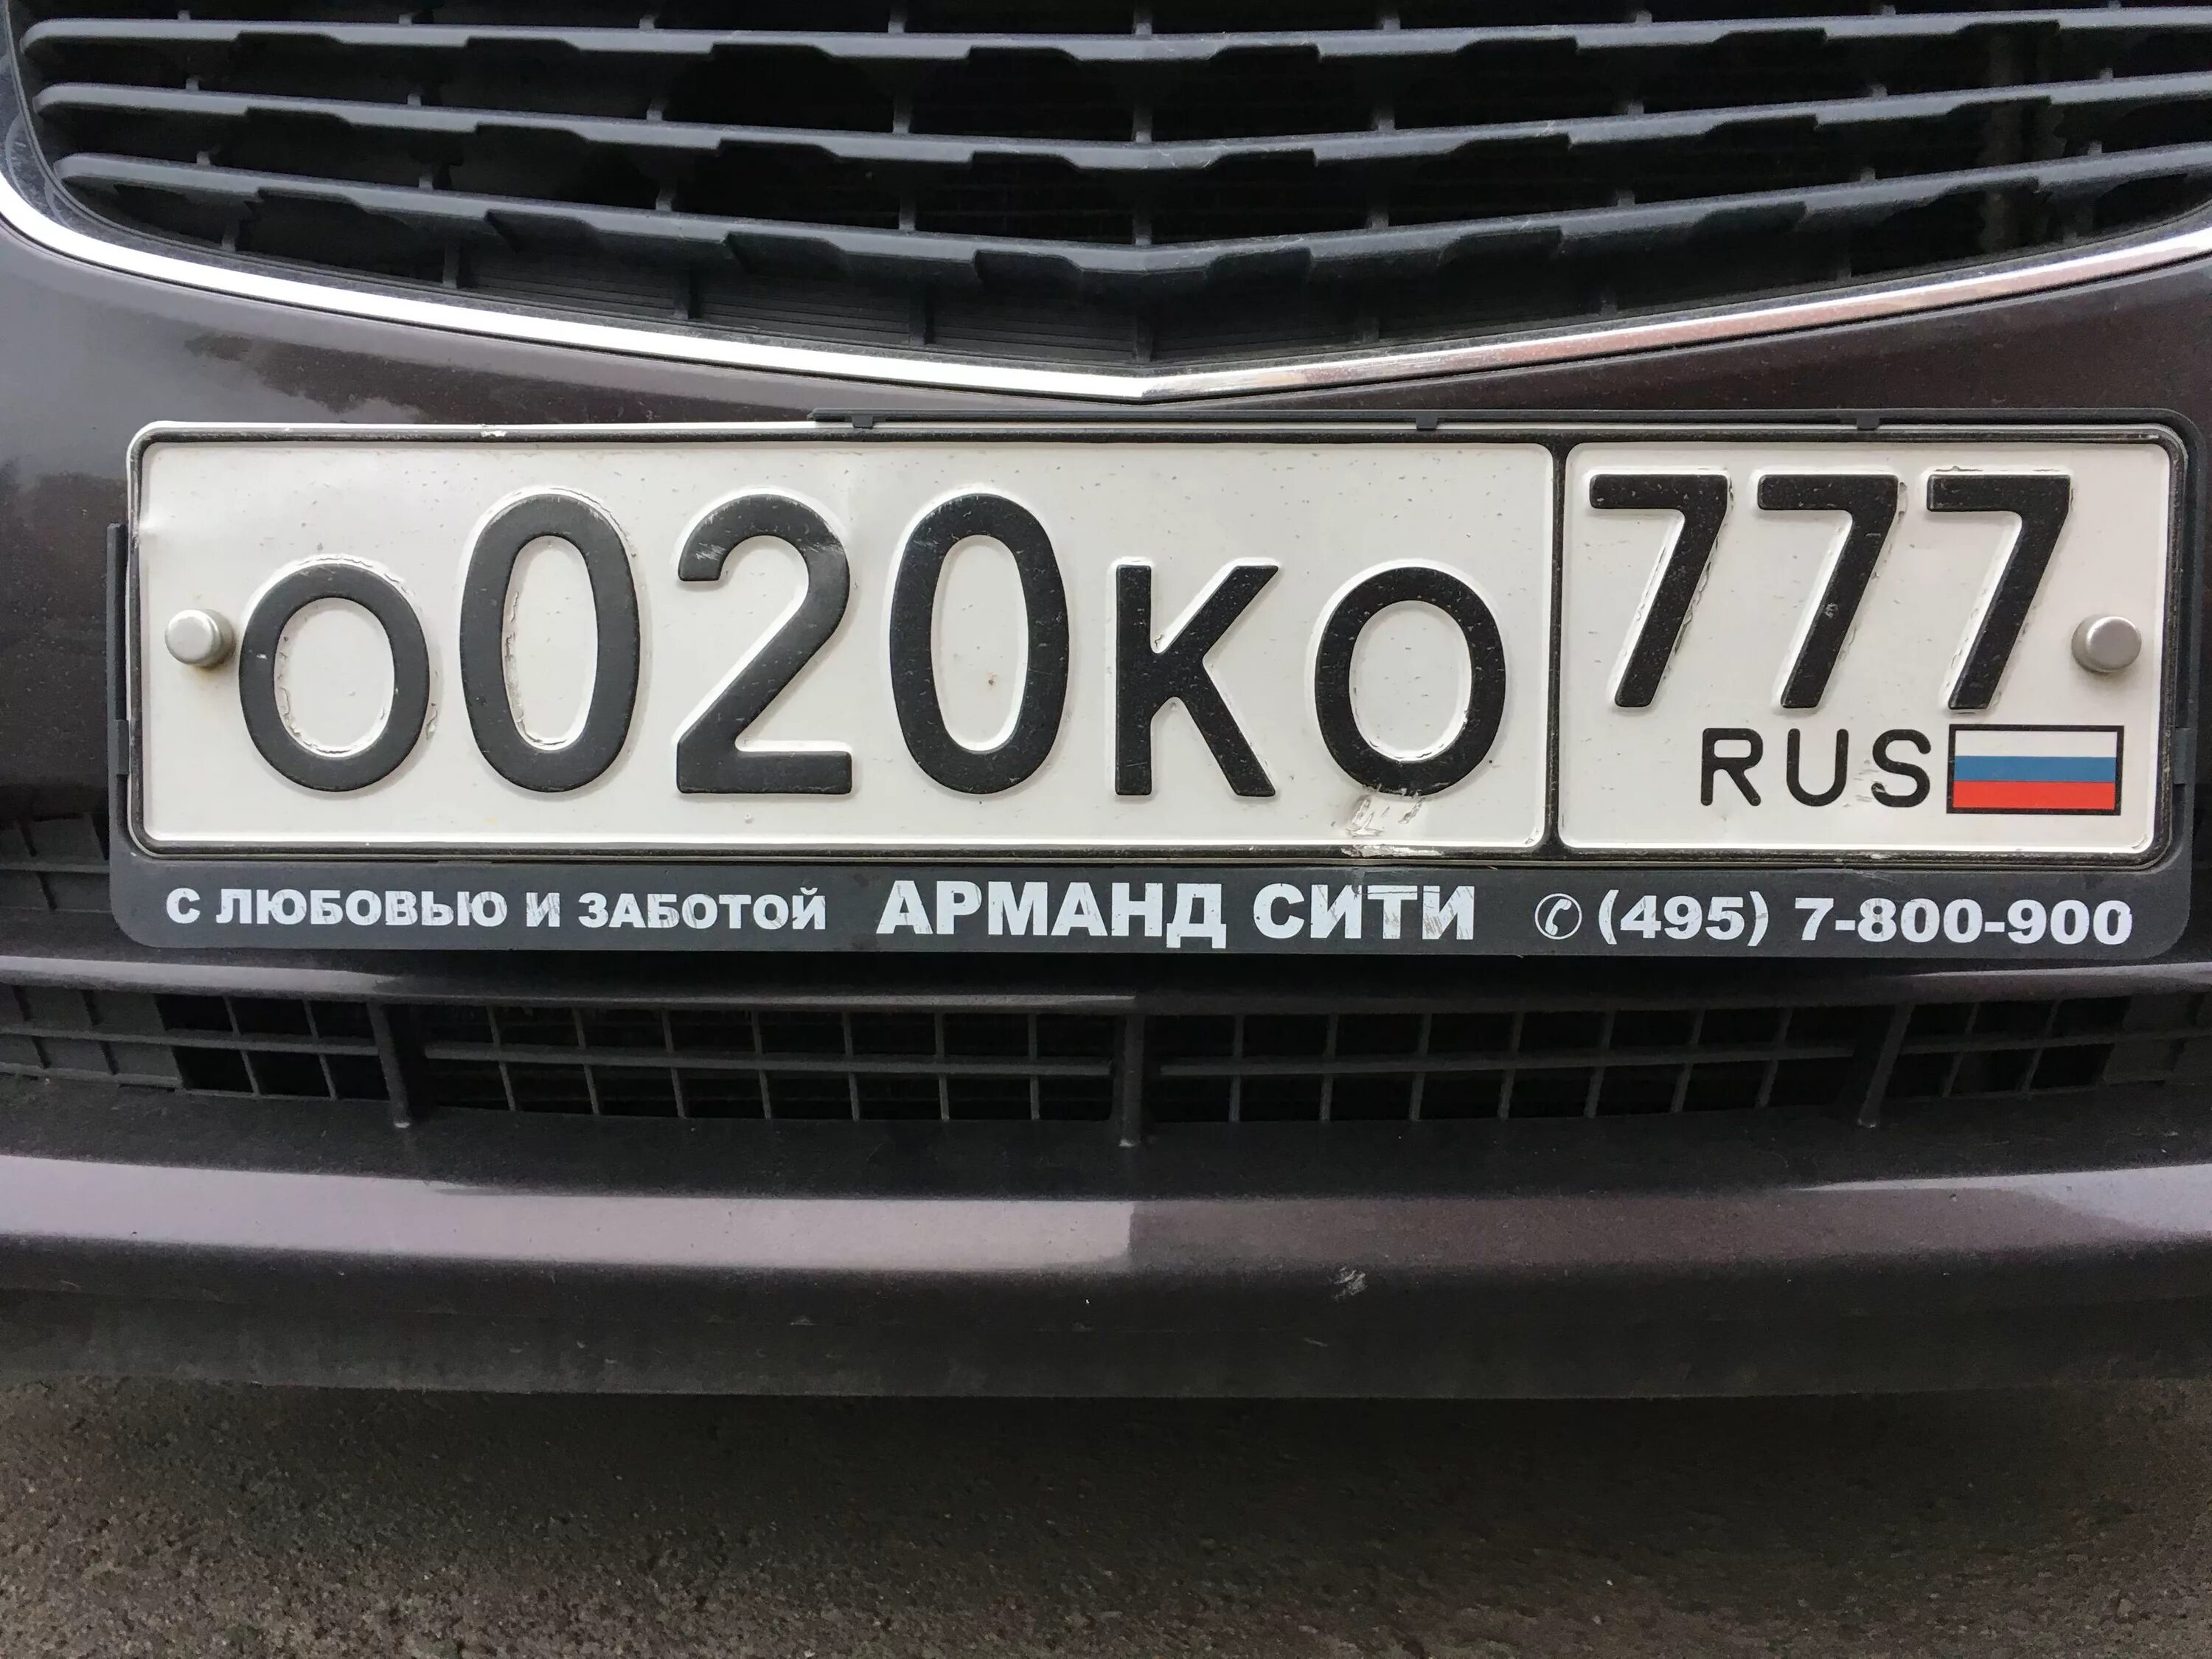 Сайт гос номеров авто. Элитные номера на машину. Госномера на автомобиль блатные. Московские номера. Номера Москвы автомобильные.